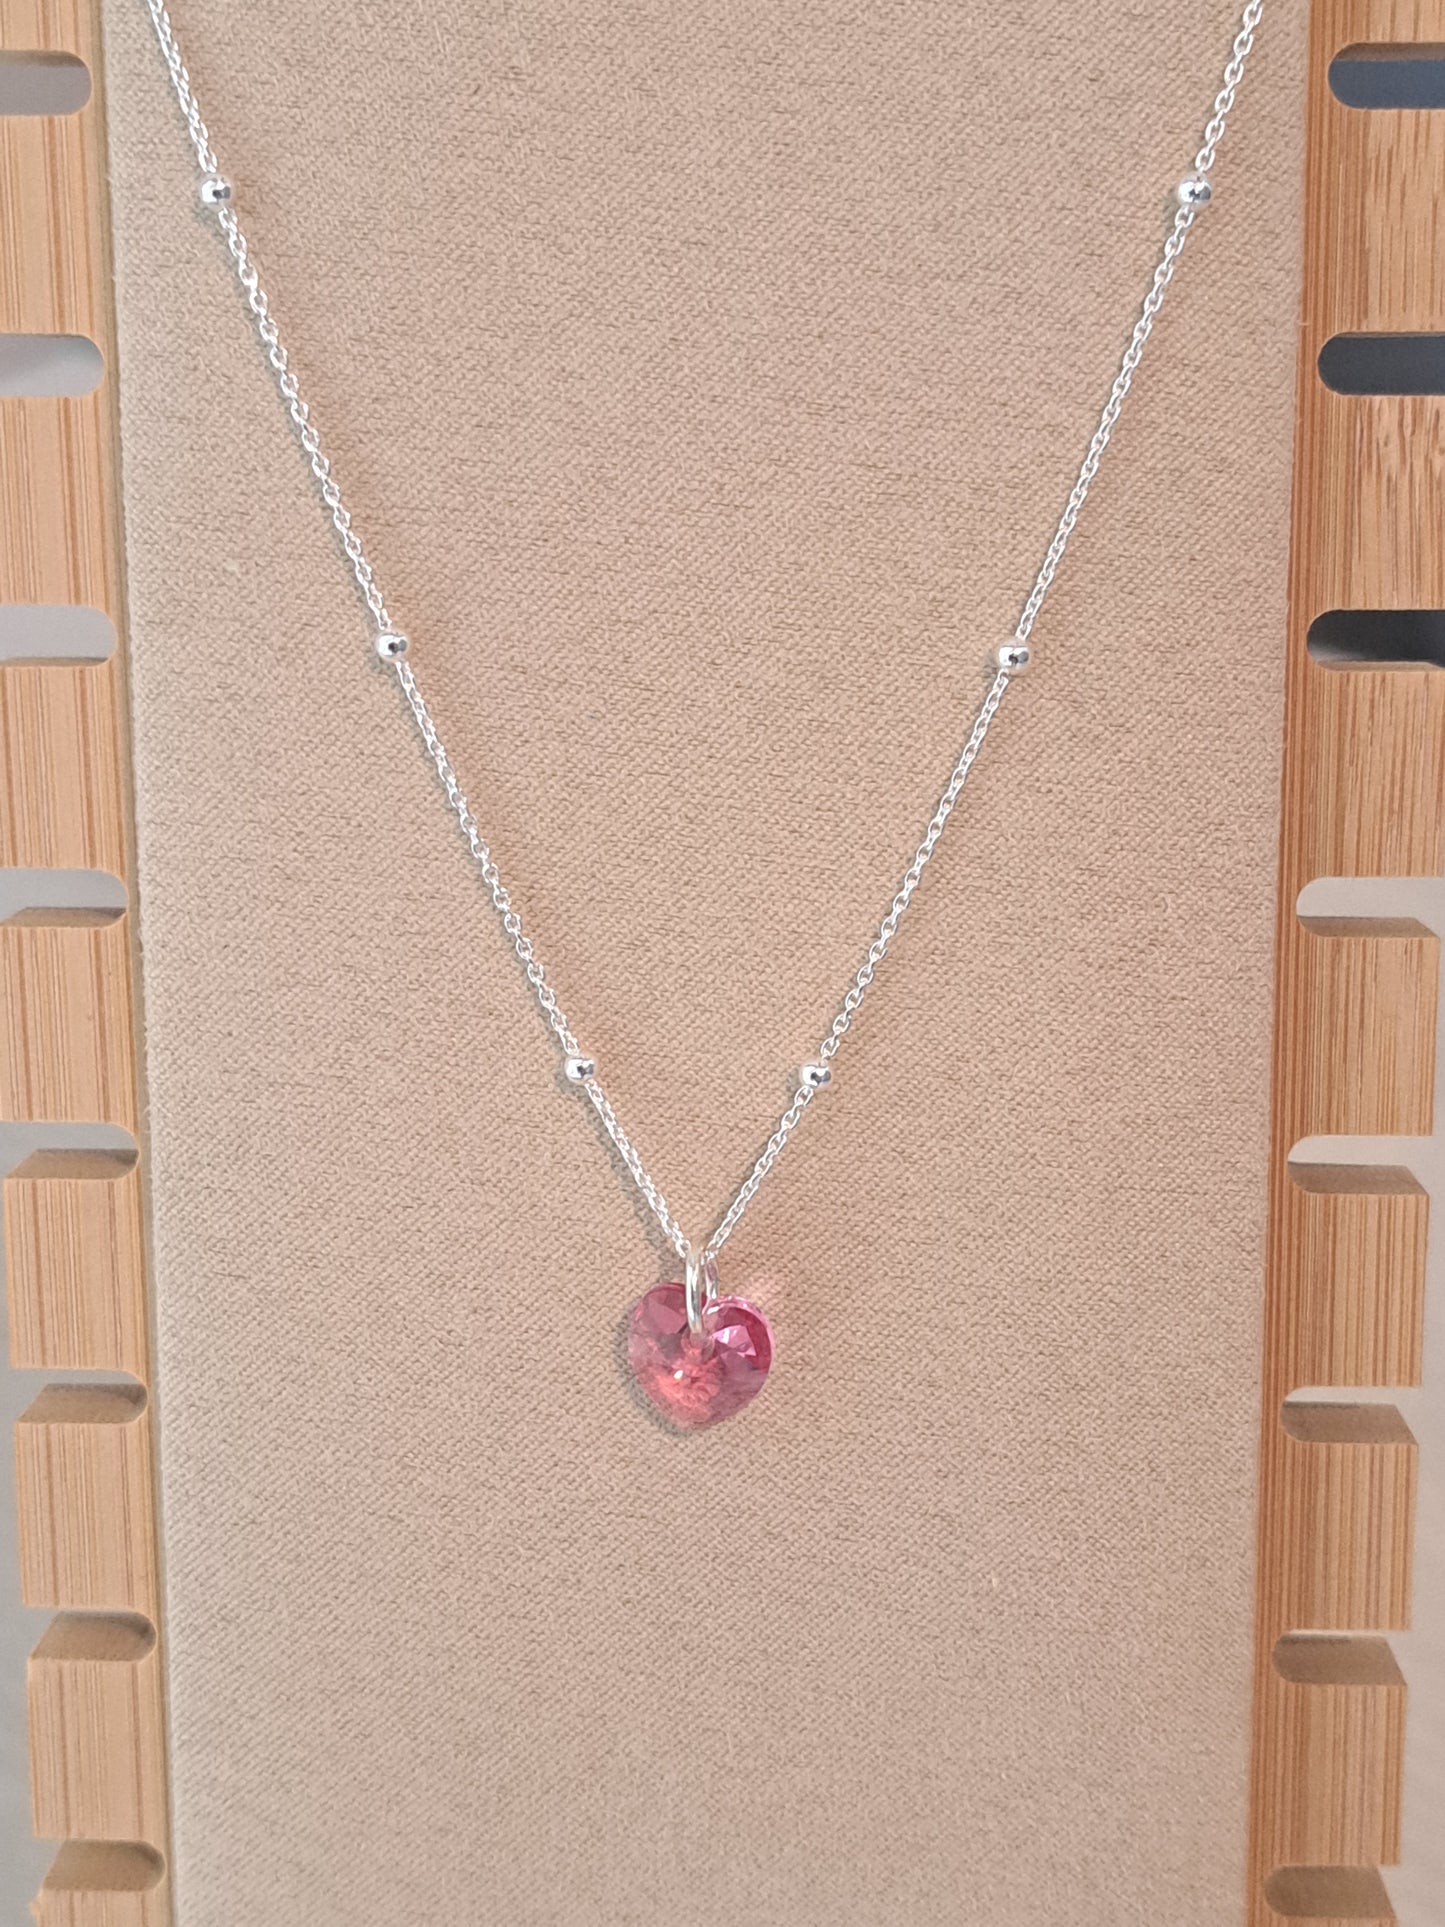 Collier femmes en argent chaîne perlée pendentif coeur cristal rose. Site de bijoux en ligne. France